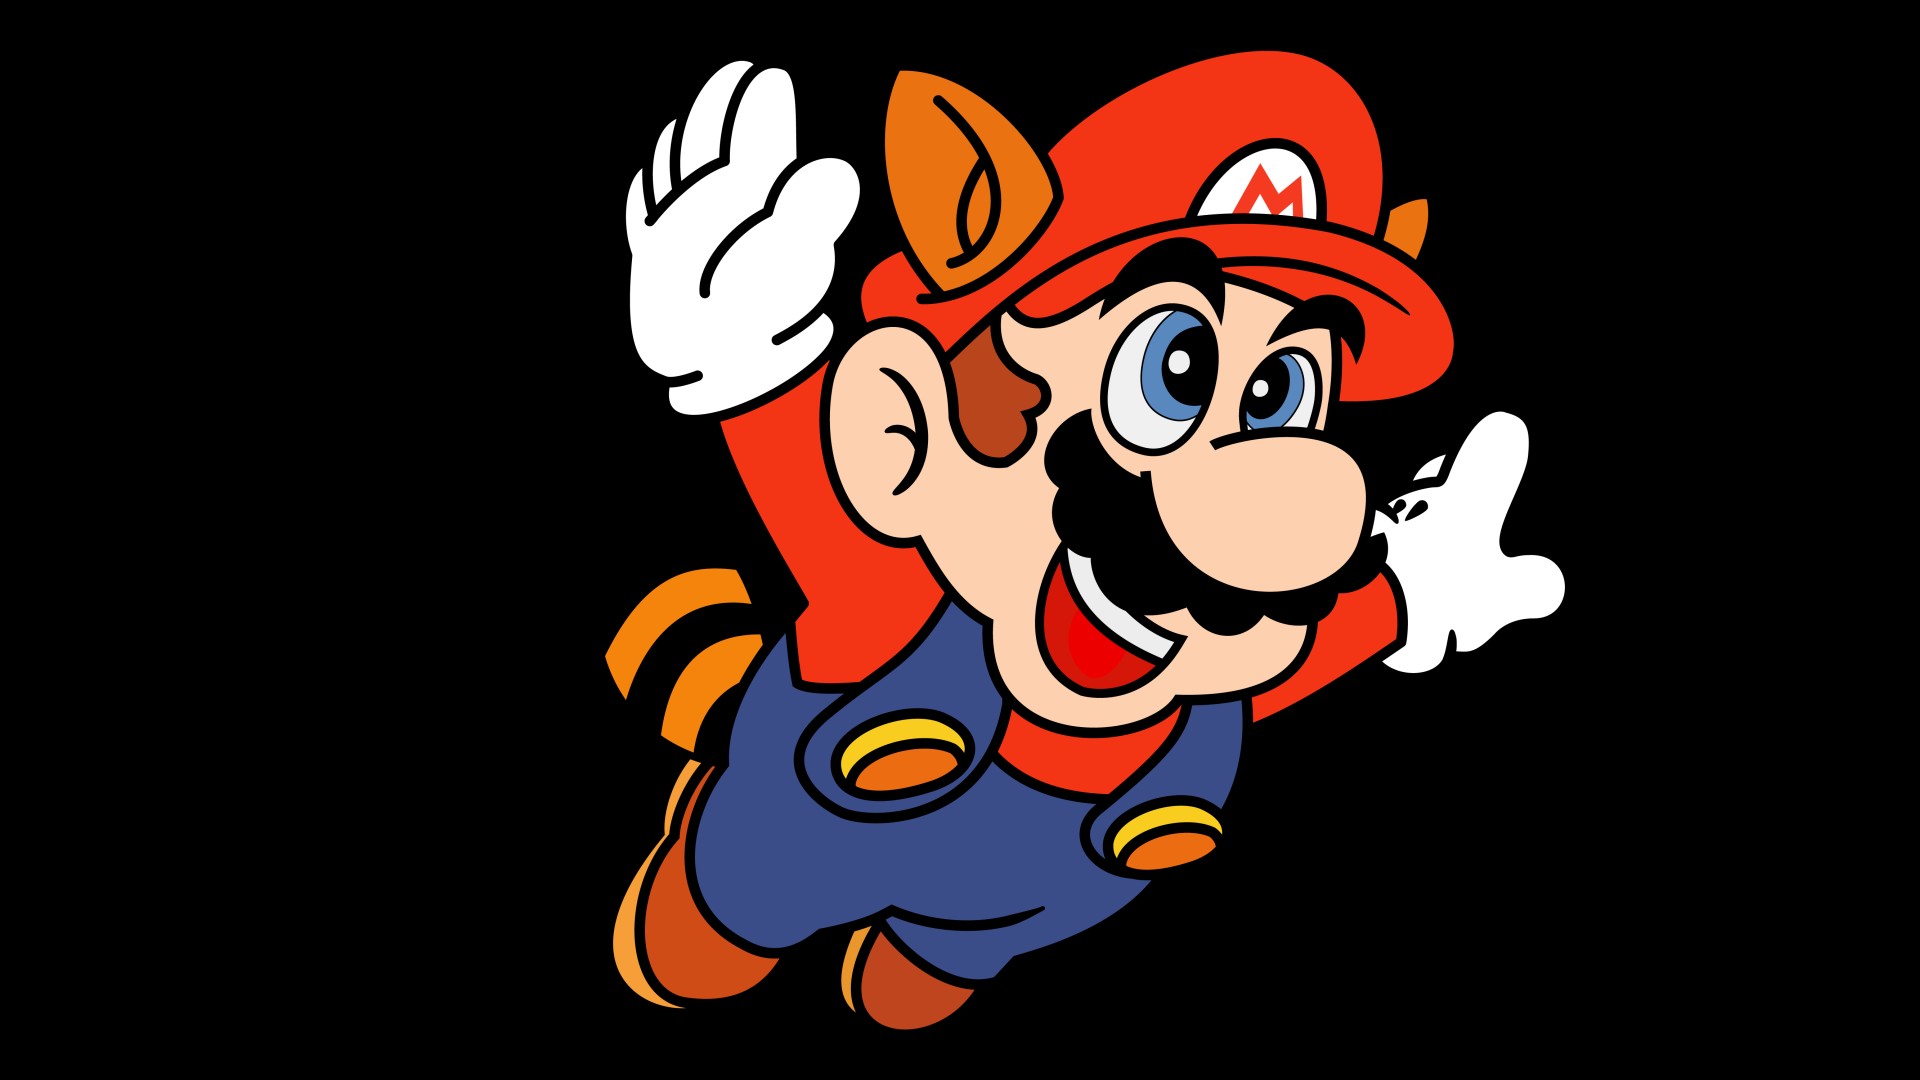 Popular Super Mario Advance 4 Super Mario Bros 3 Image for Phone